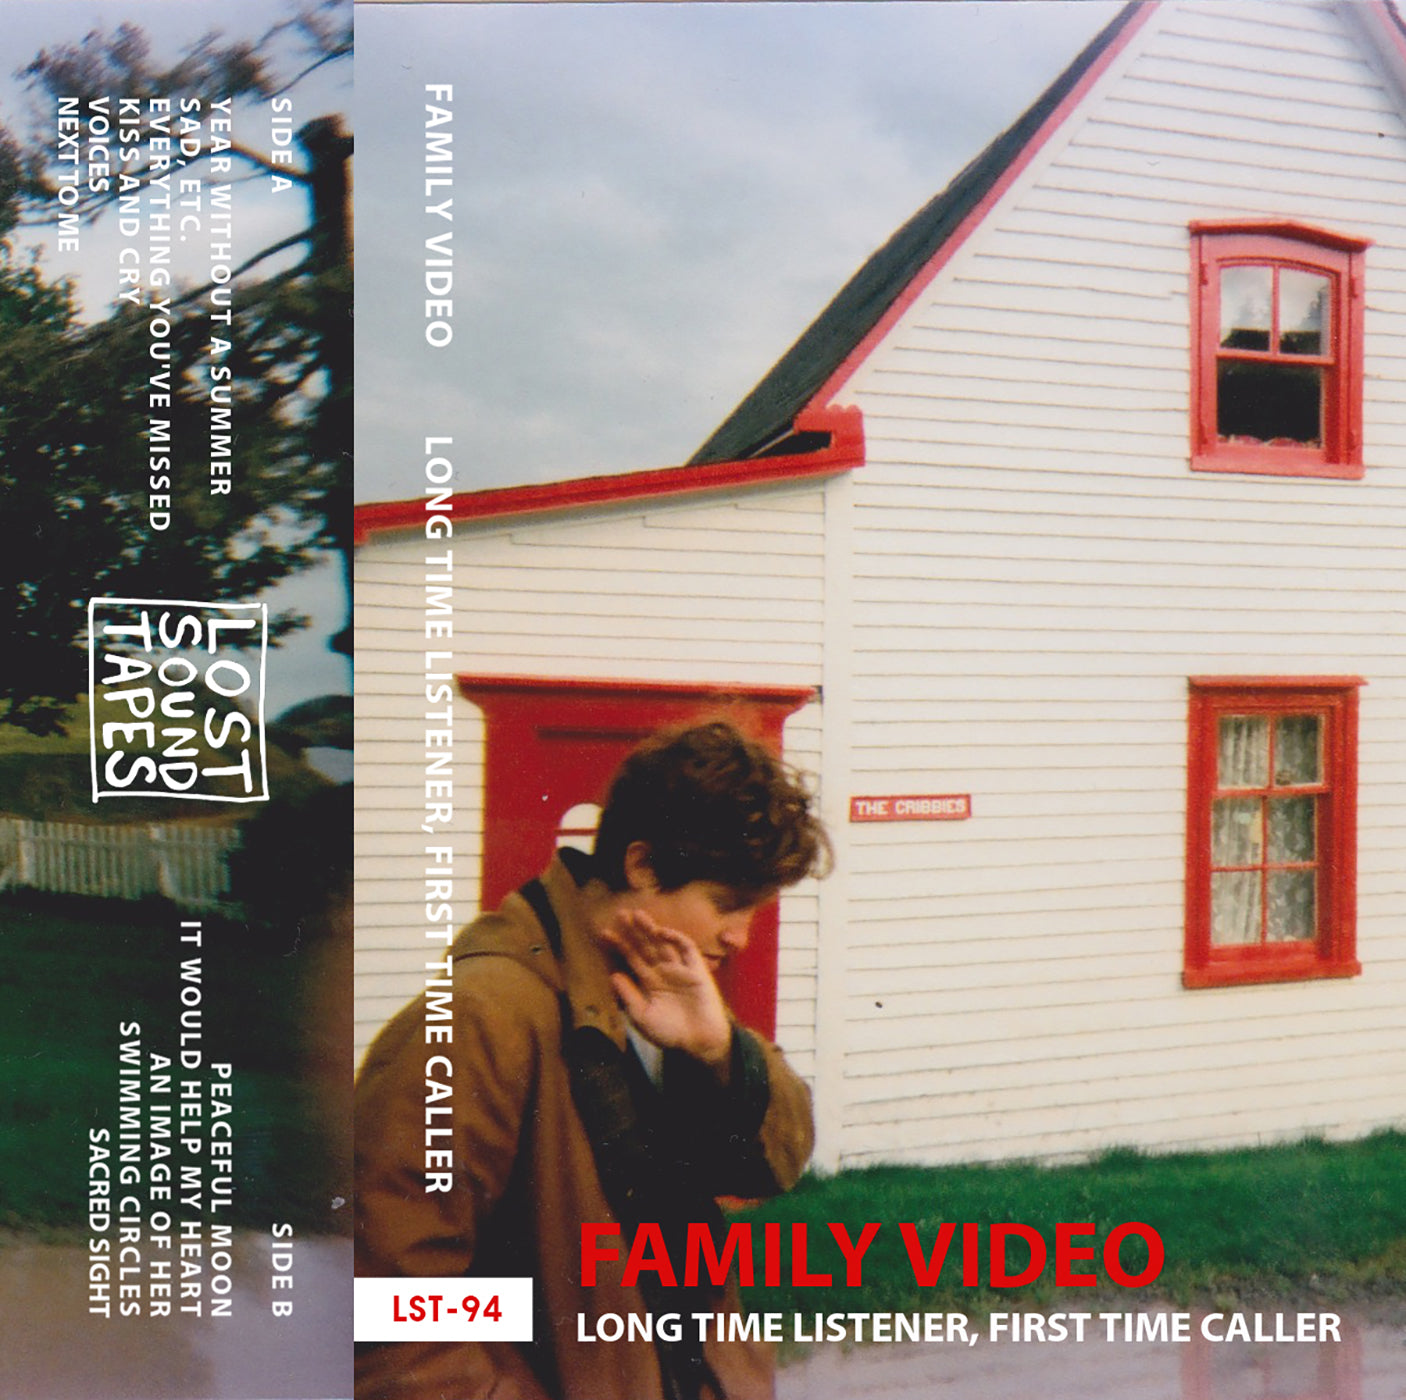 FAMILY VIDEO "Long Time Listener, First Time Caller" cassette tape